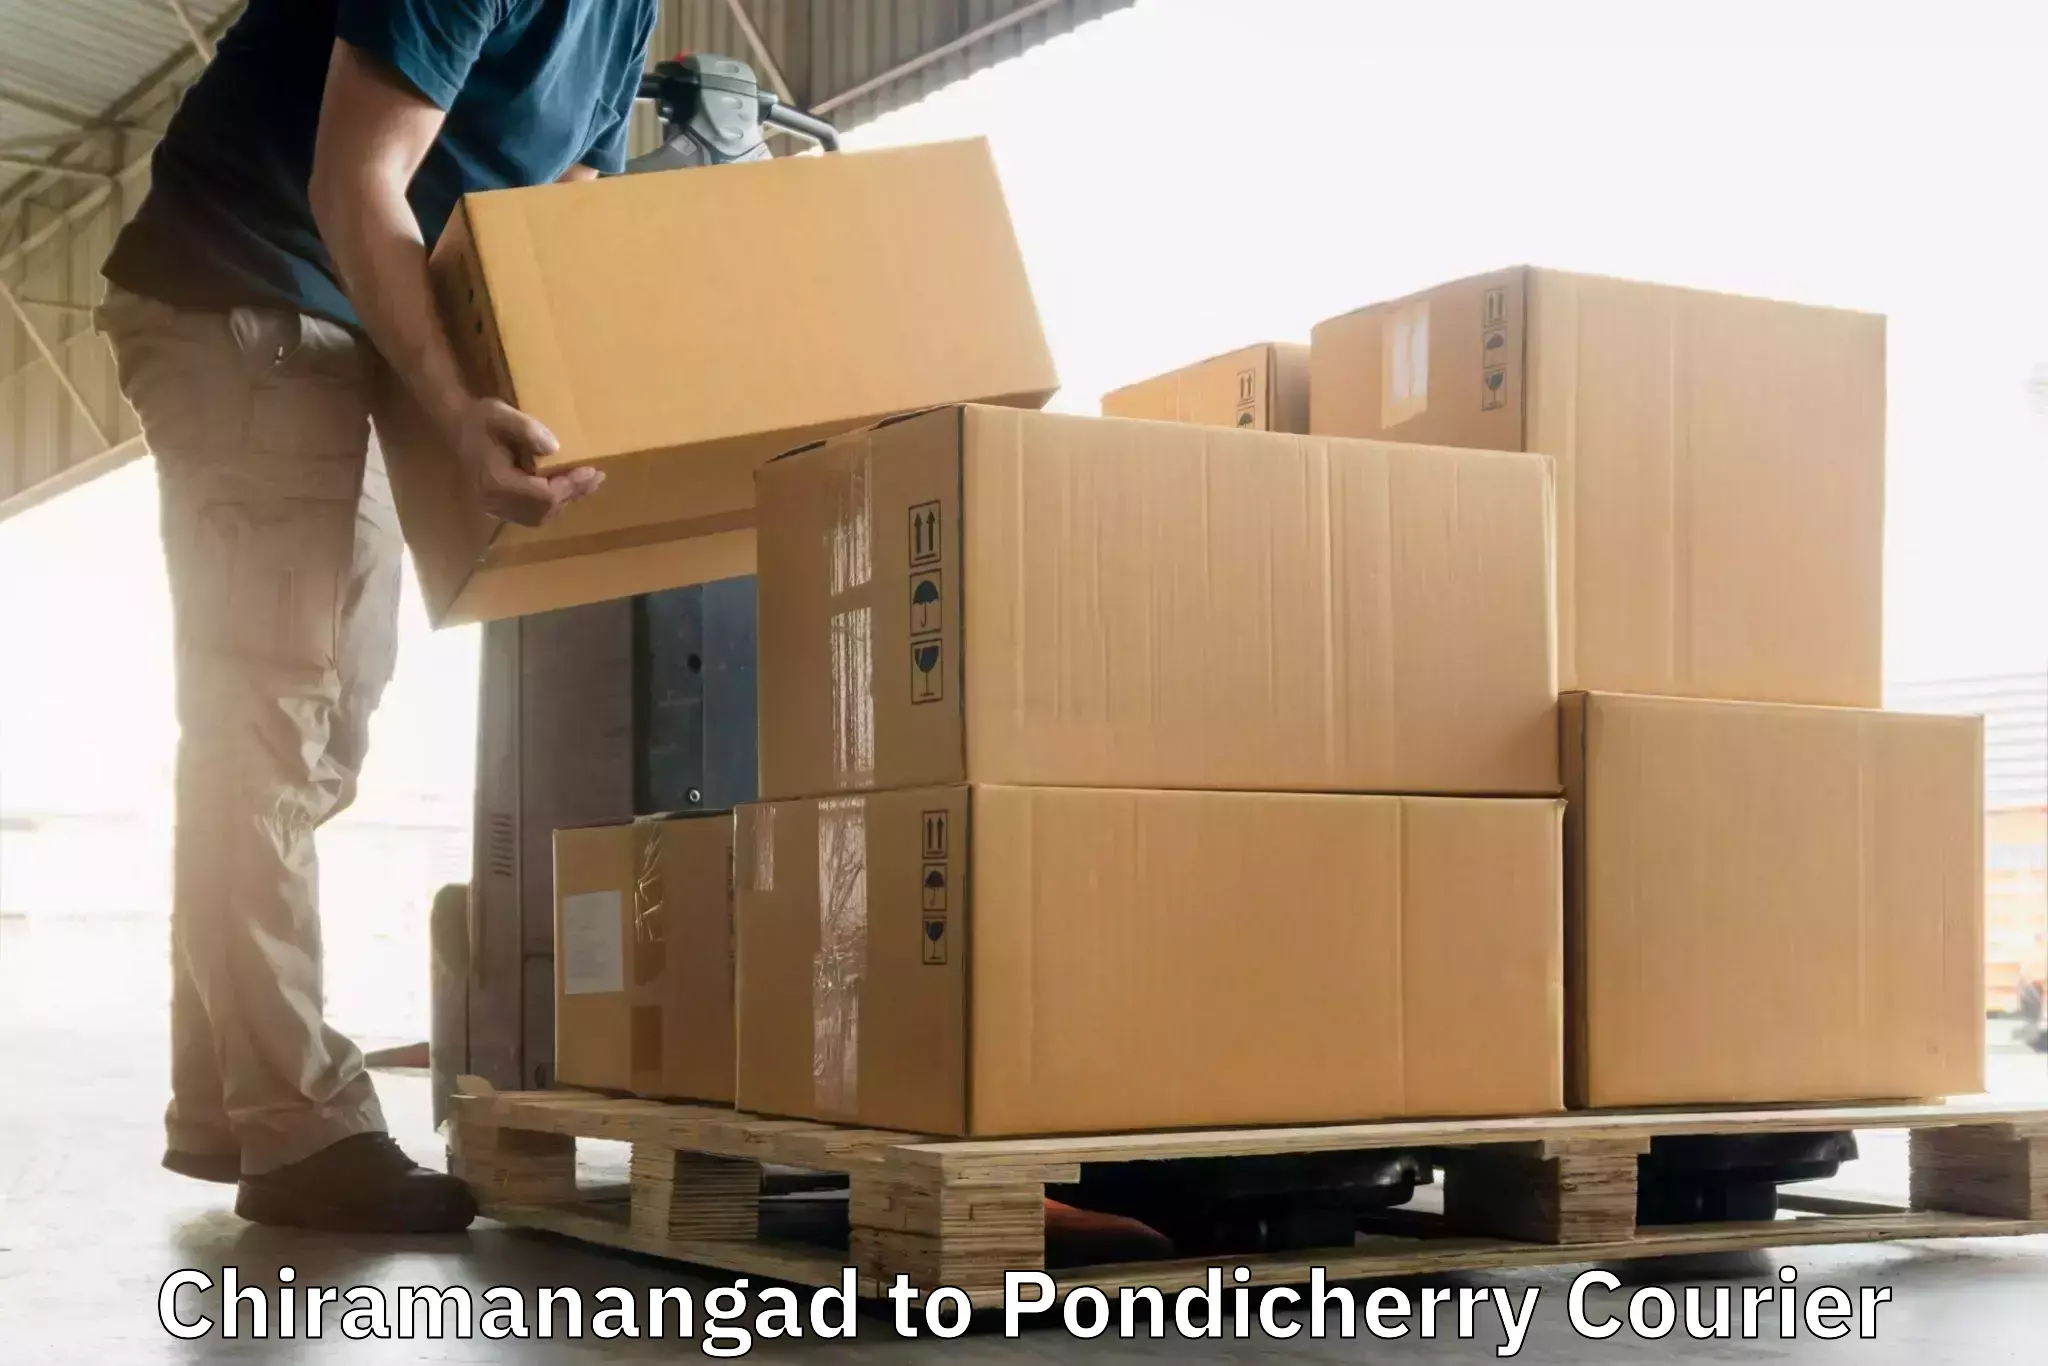 Trackable shipping service Chiramanangad to Karaikal